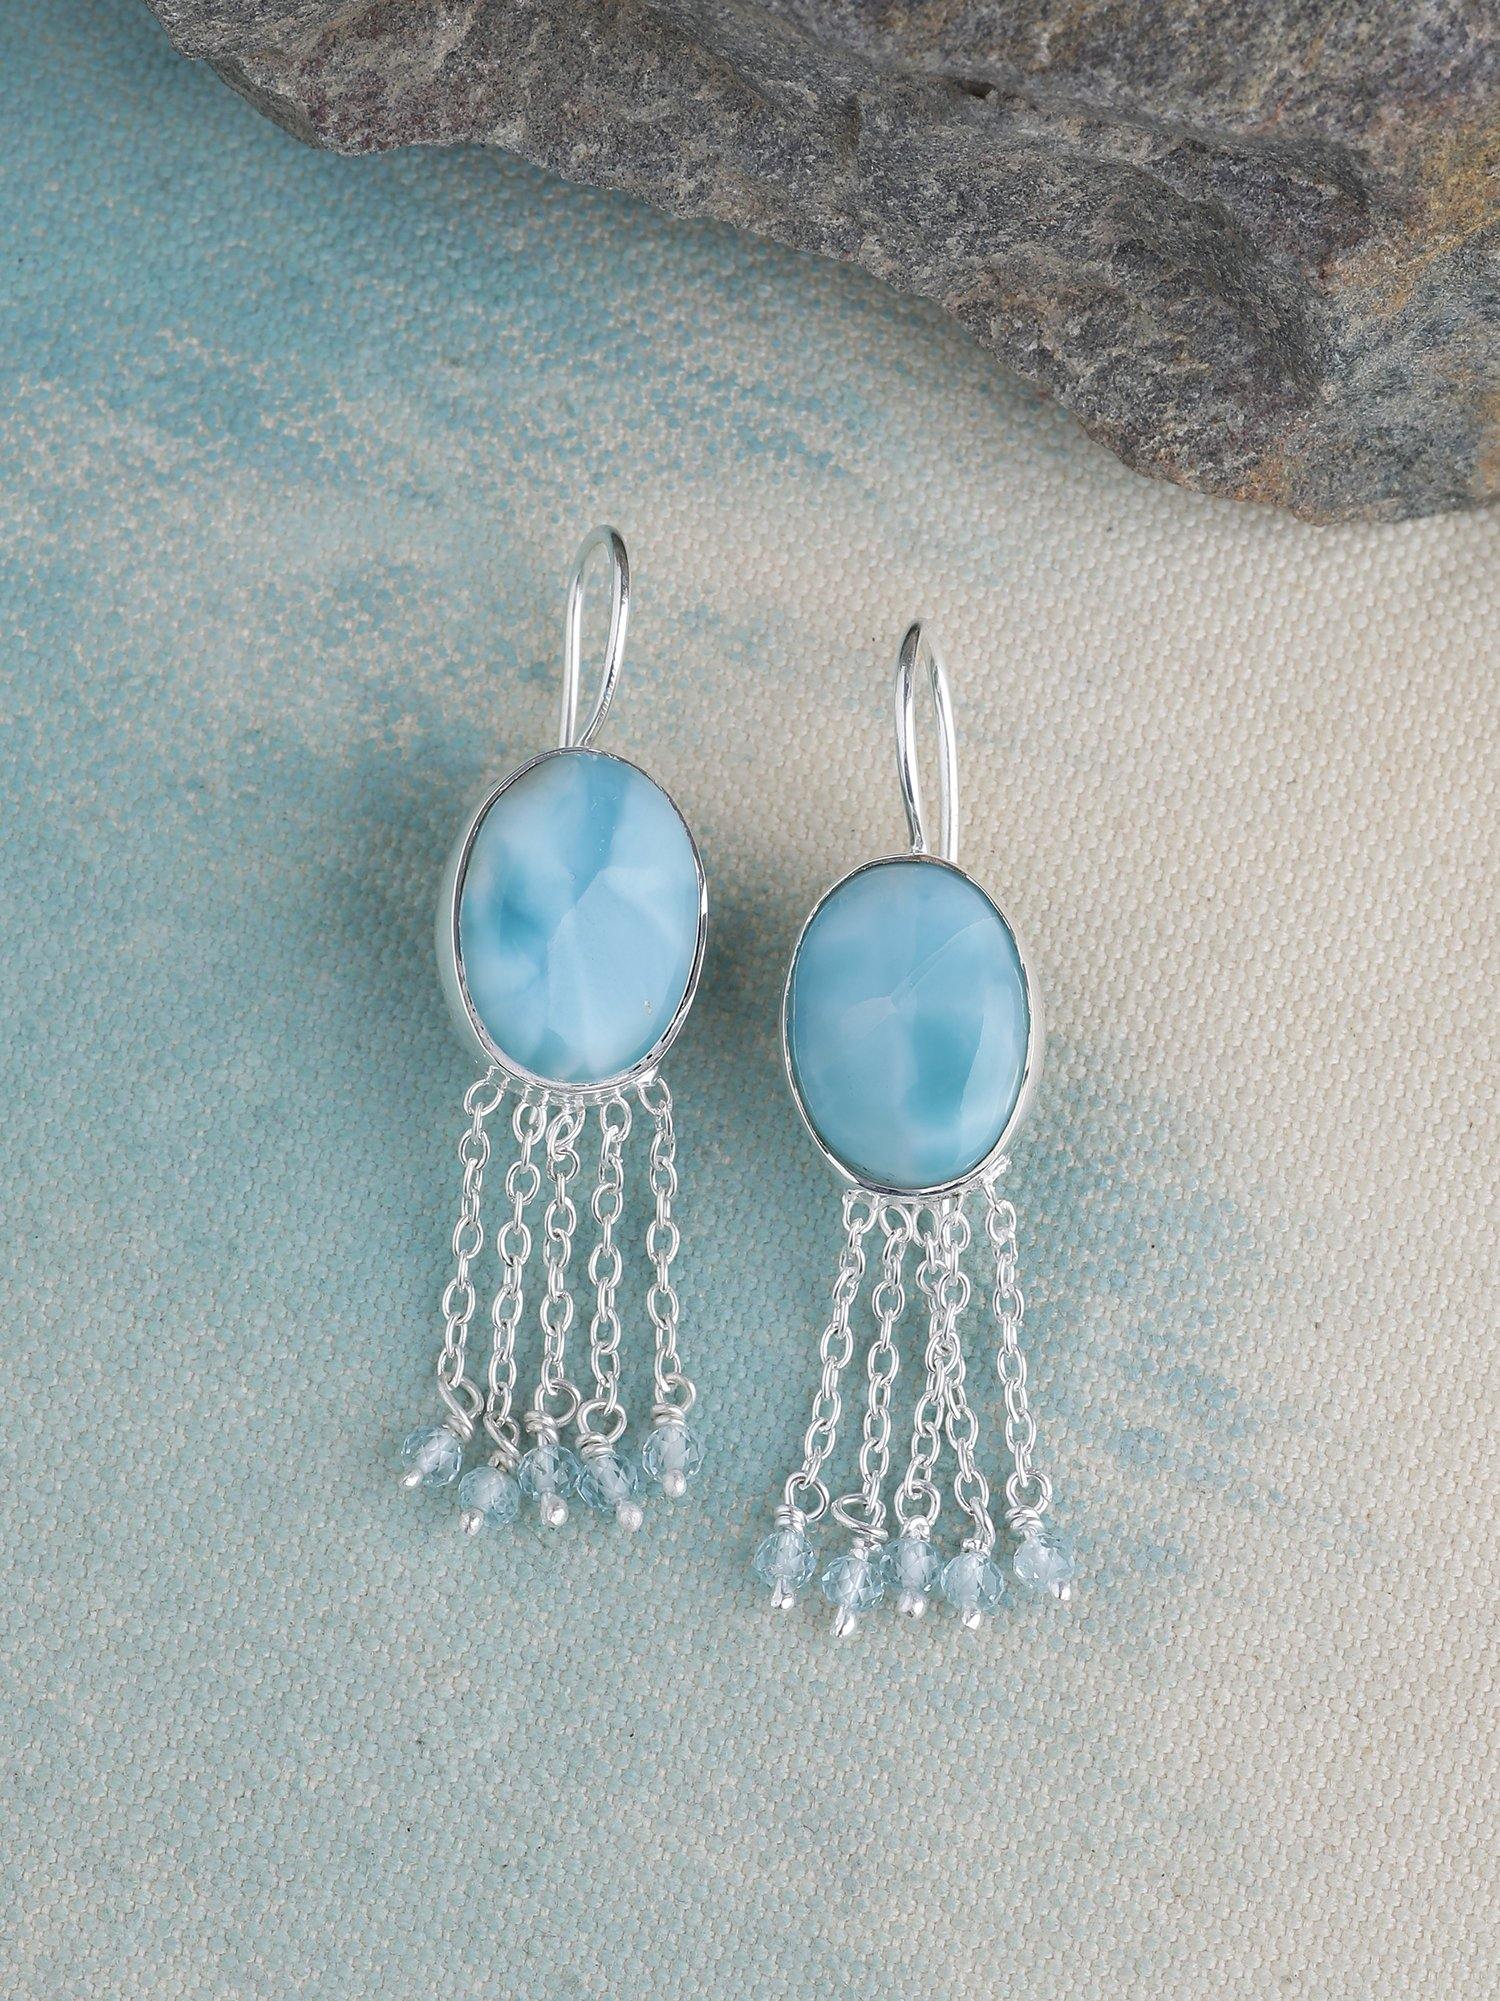 Larimar Blue Topaz Solid 925 Sterling Silver Fixed Wire Chandelier Earrings Jewelry - YoTreasure